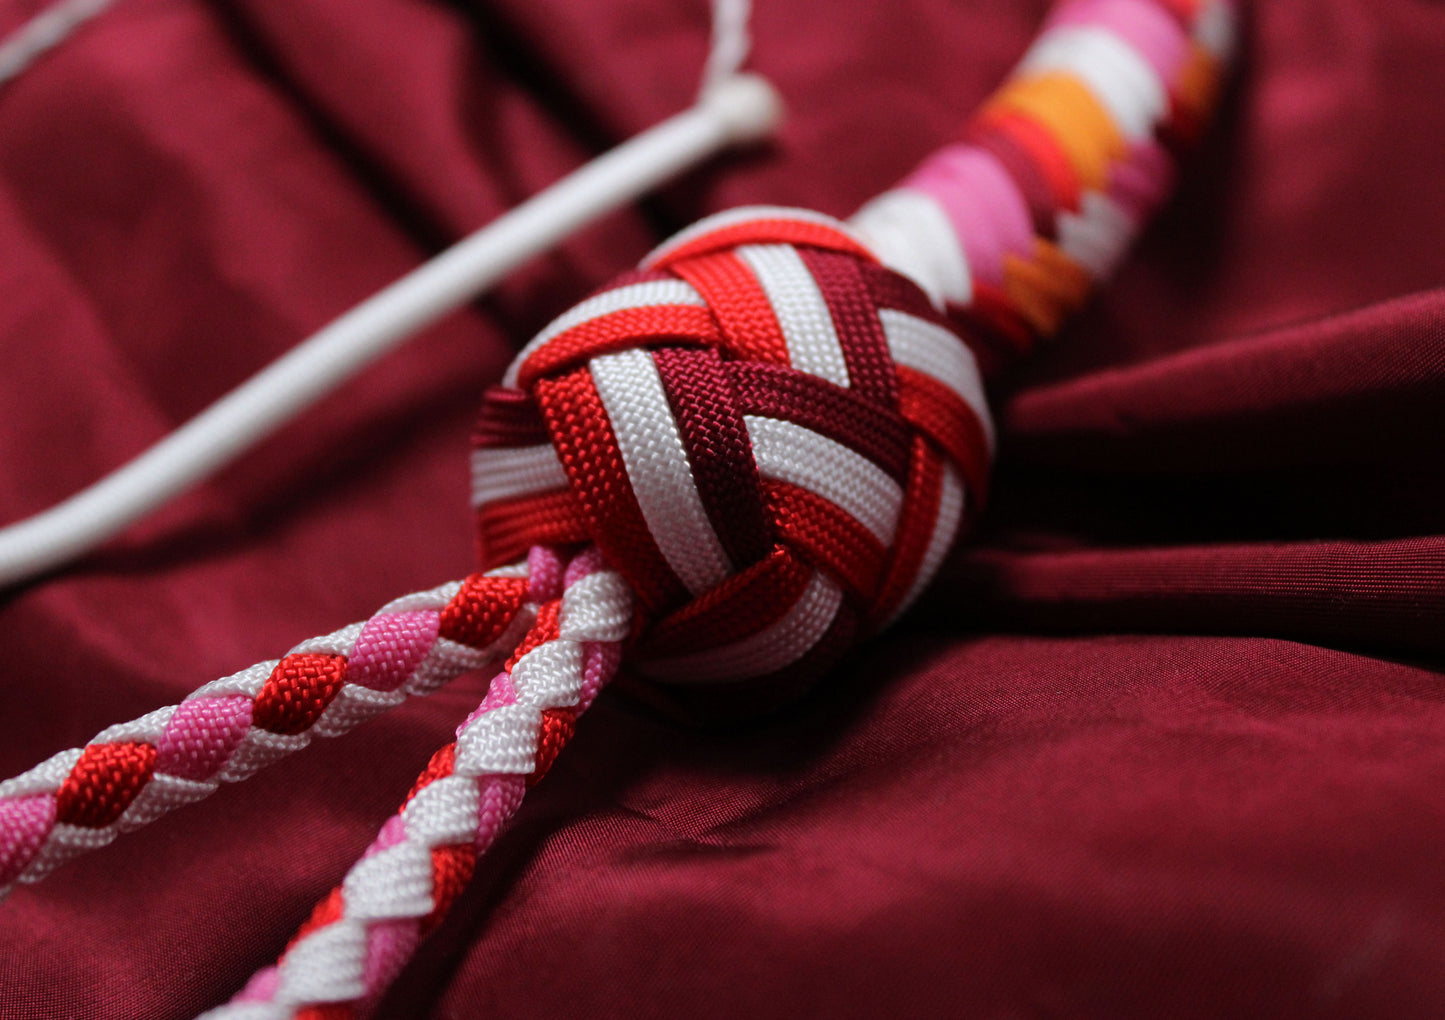 détail du knot aux couleurs du drapeau lesbien, alternance de rouge, blanc et bordeaux